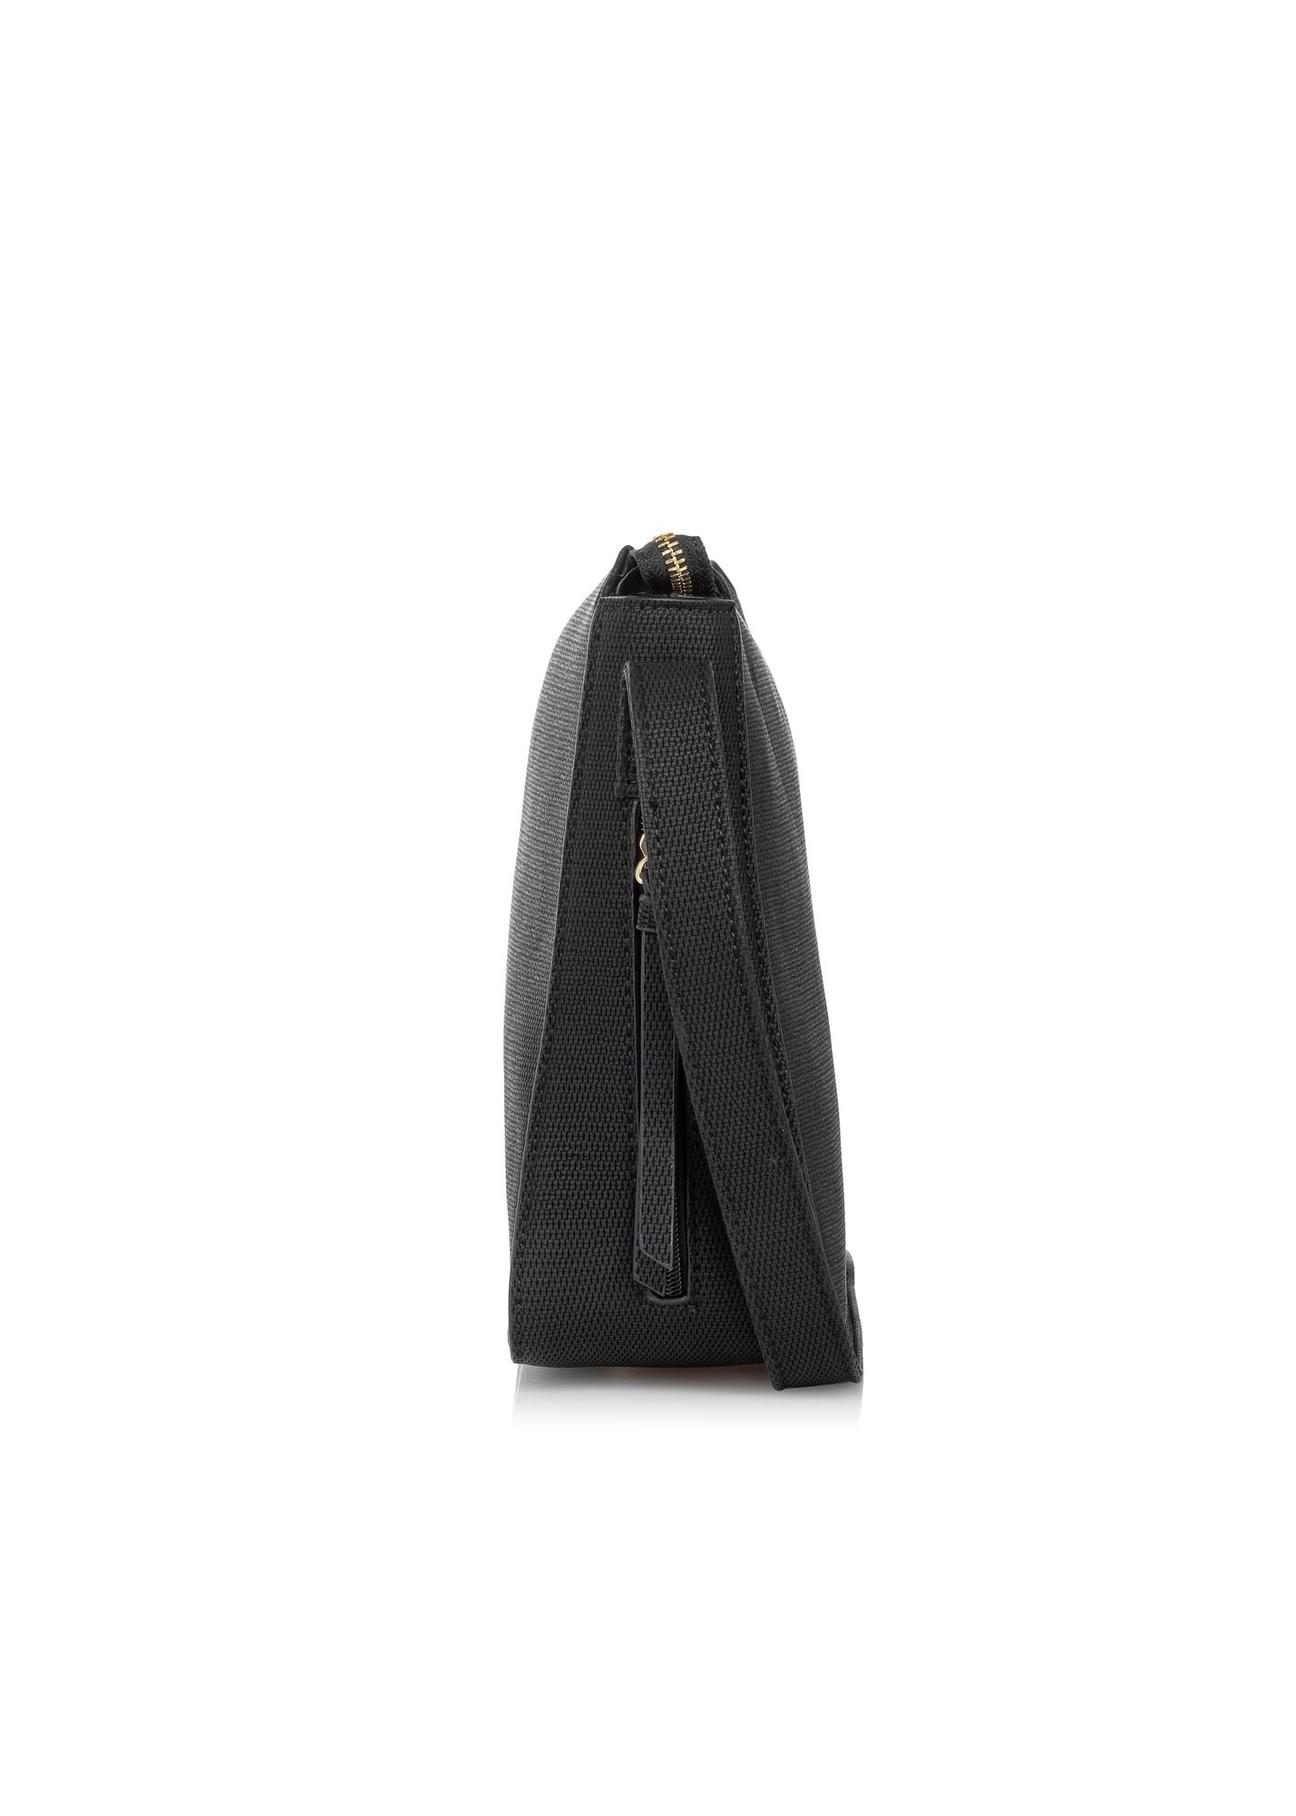 Czarna torebka damska z kieszonkami TOREC-0760-99(W23)